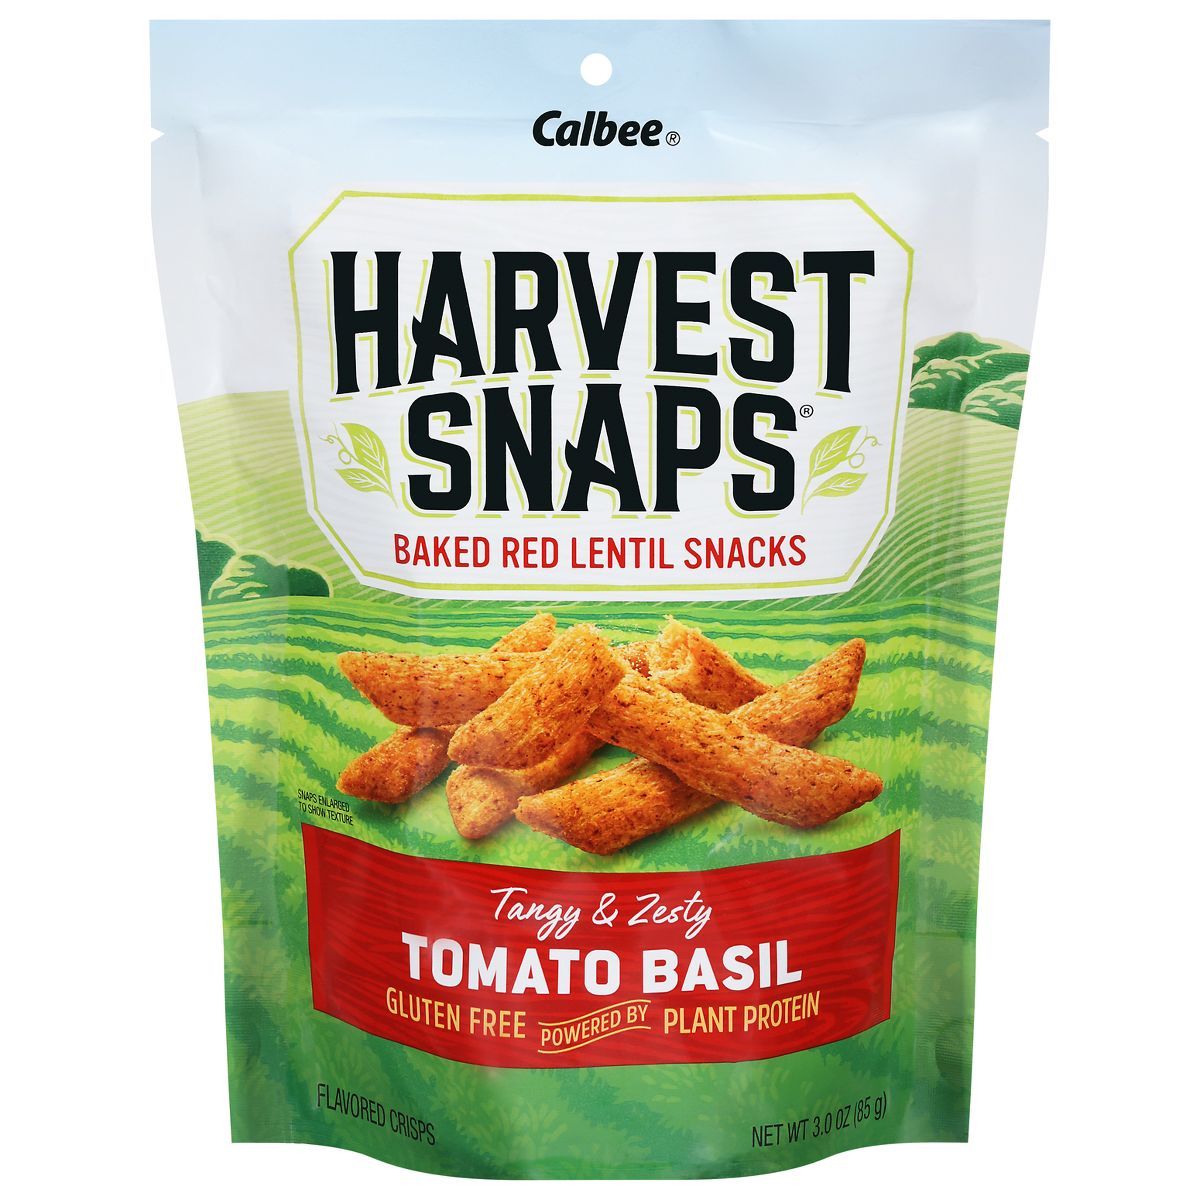 Harvest Snaps Red Lentil Snack Crisps Tomato Basil - 3oz | Target